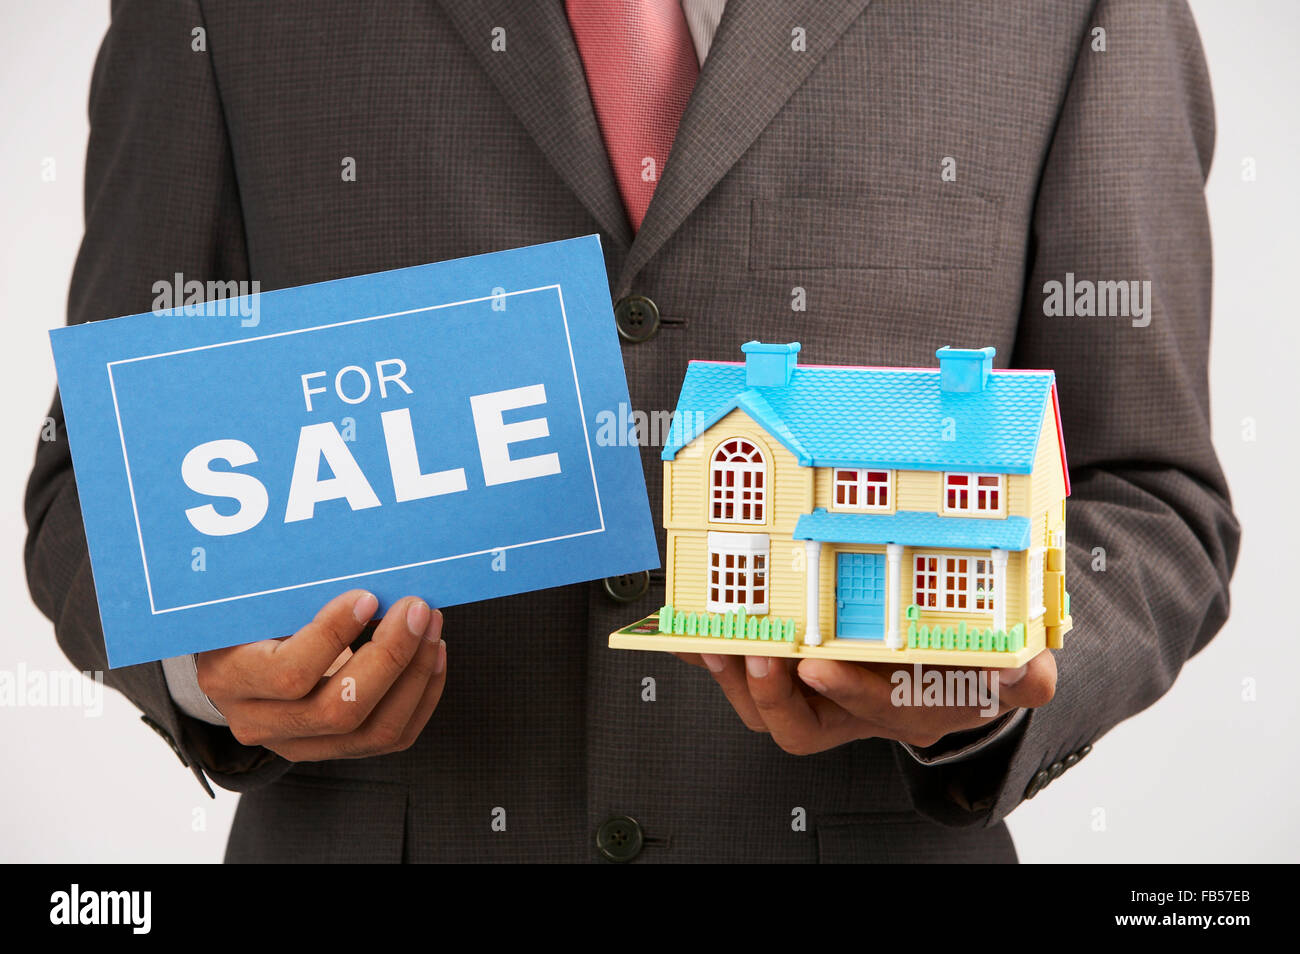 Хотите быстро продать. Хотите продать квартиру. Инвестор в недвижимость. Дешевая недвижимость. Помогу продать ипотечную квартиру.